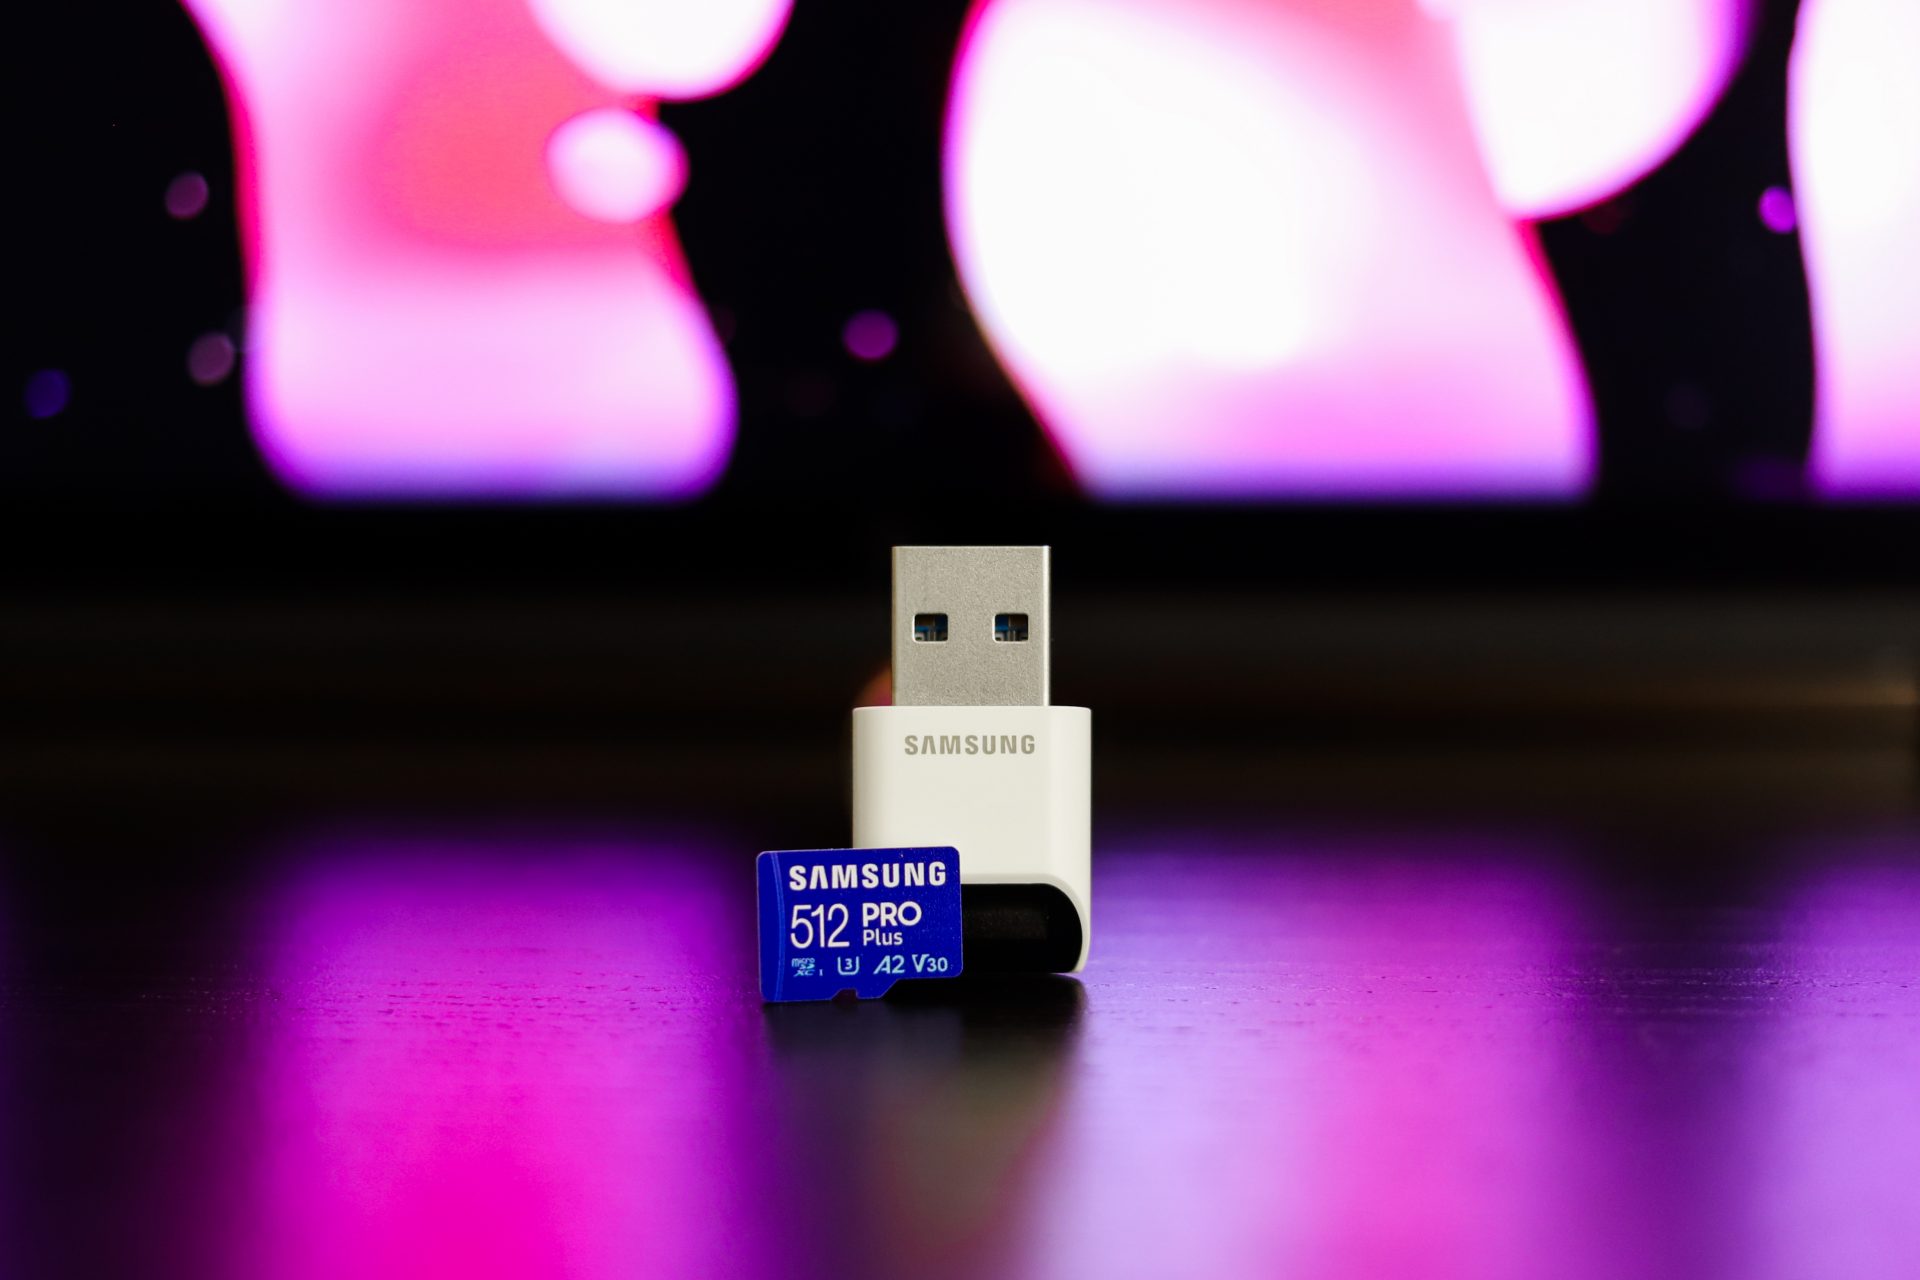 Samsung carte microSDXC 128 Go PRO Plus avec clé USB - Carte mémoire -  Samsung